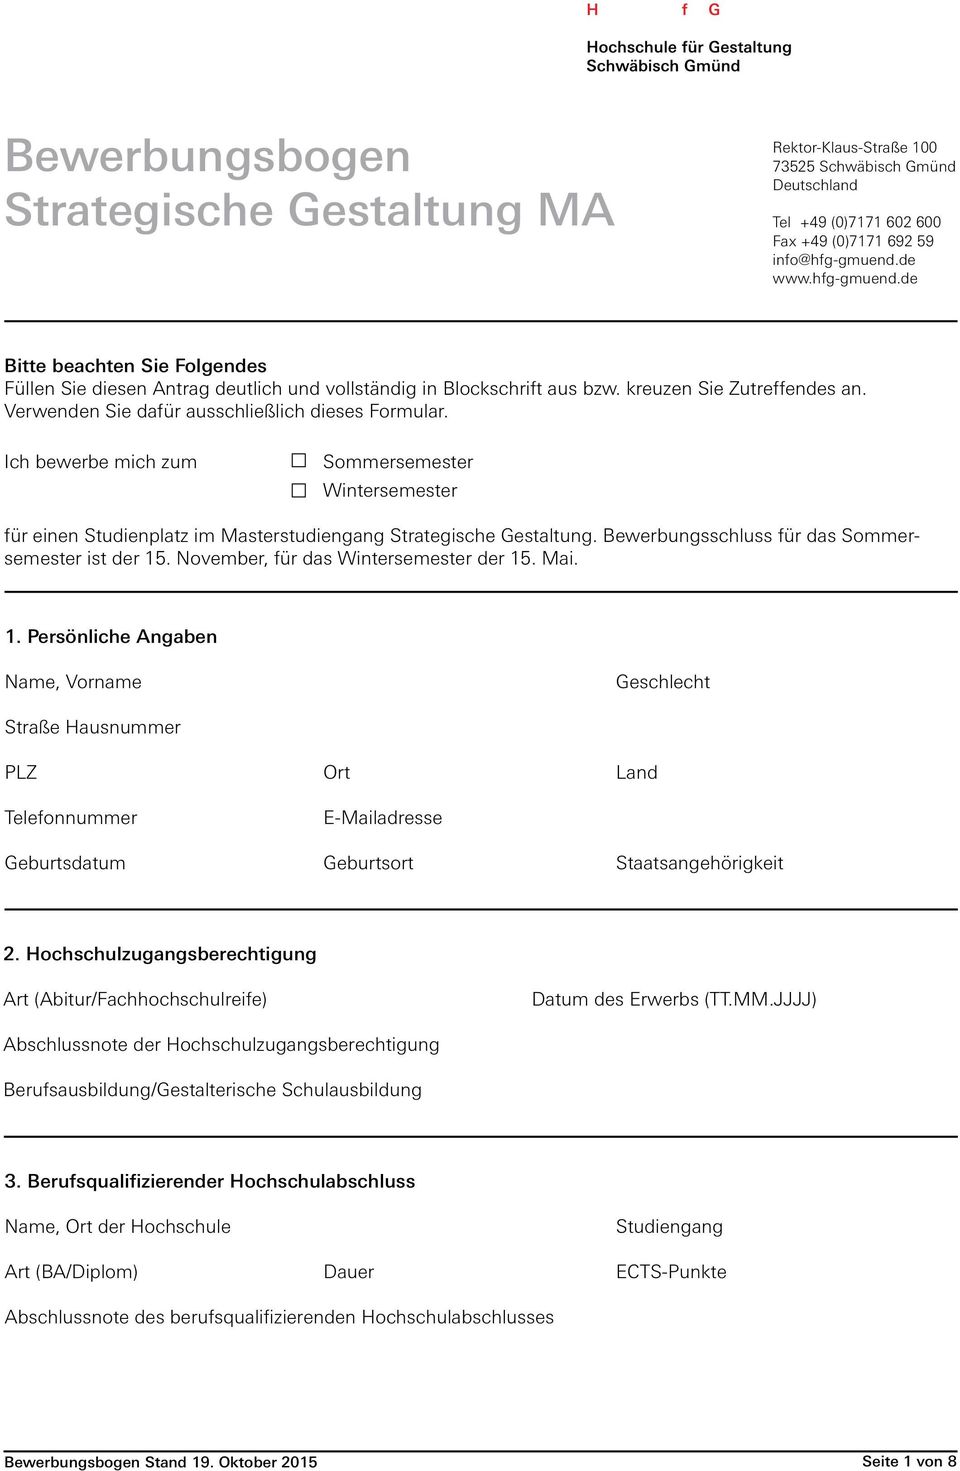 Bewerbungsbogen Strategische Gestaltung Ma Pdf Kostenfreier Download